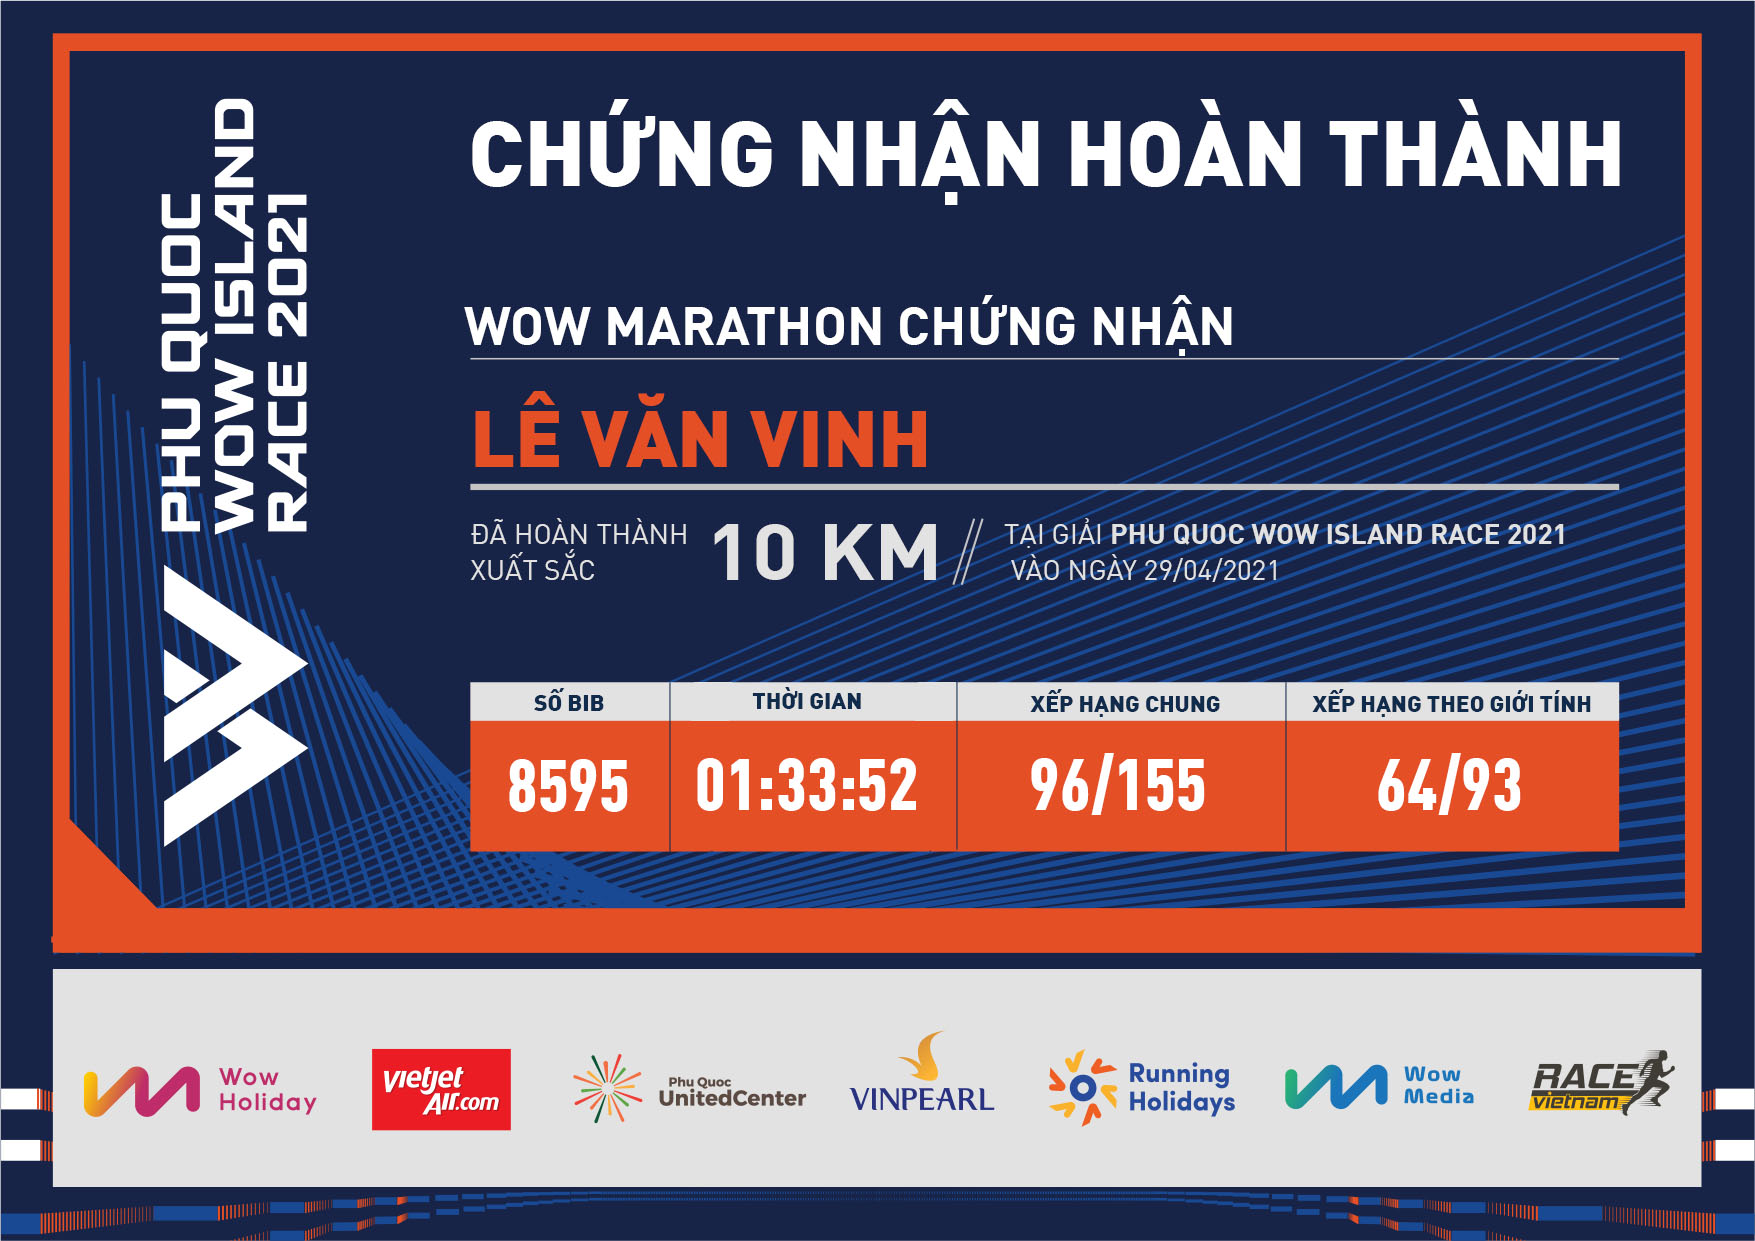 8595 - Lê Văn Vinh